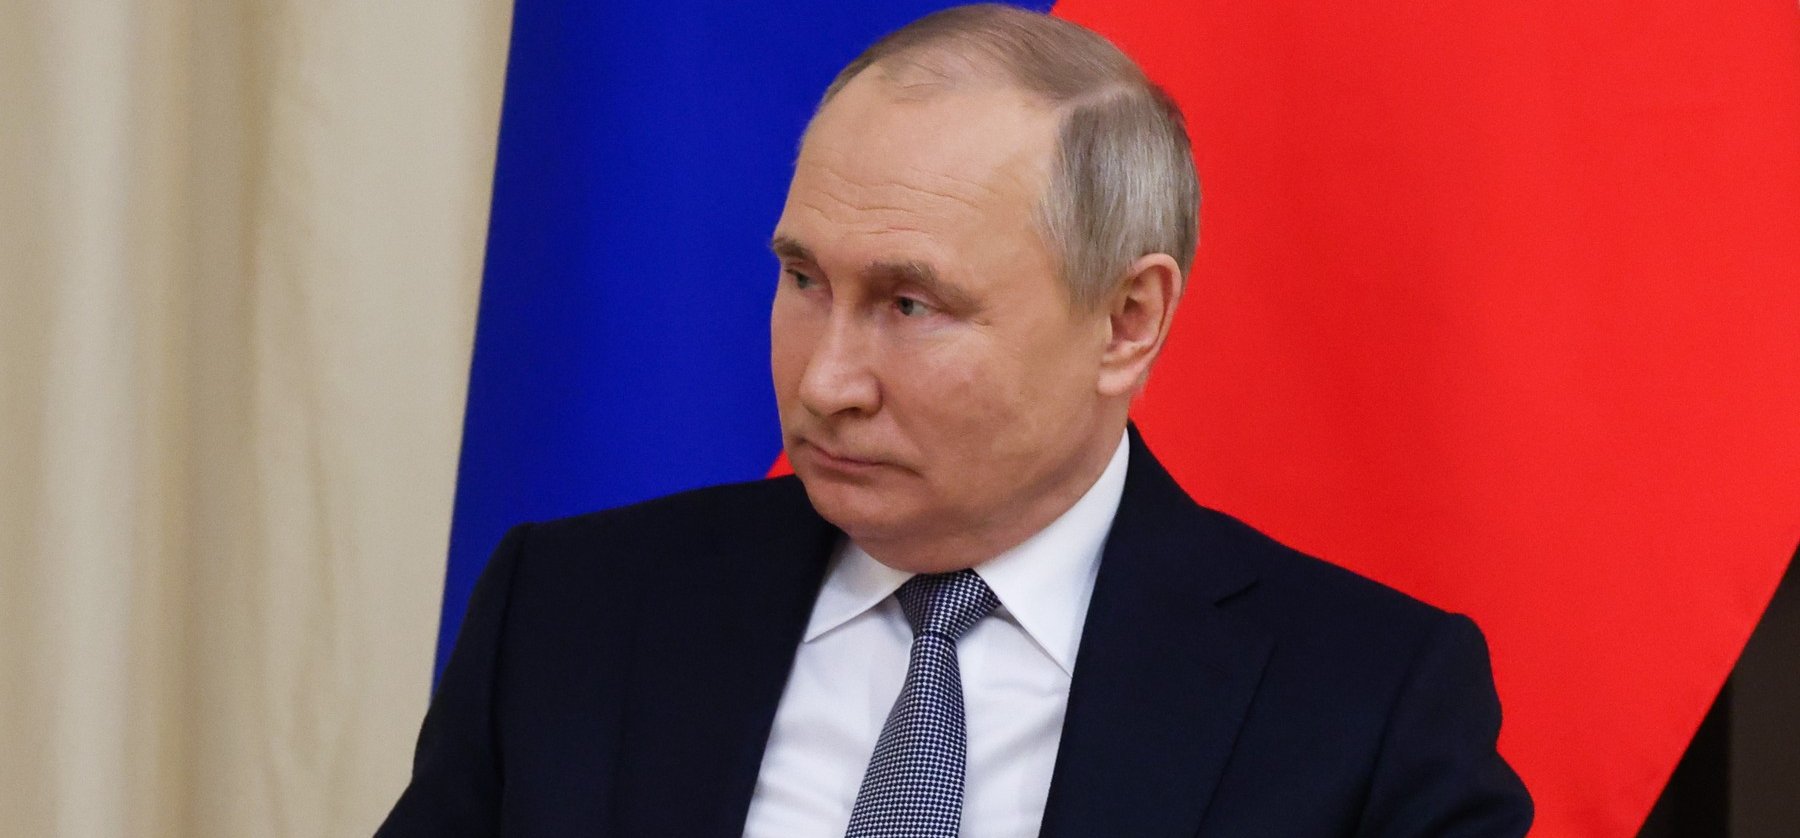 Putyin kezdi elveszíteni a támogatóit? - Egyre többen kérdőjelezik meg  döntését